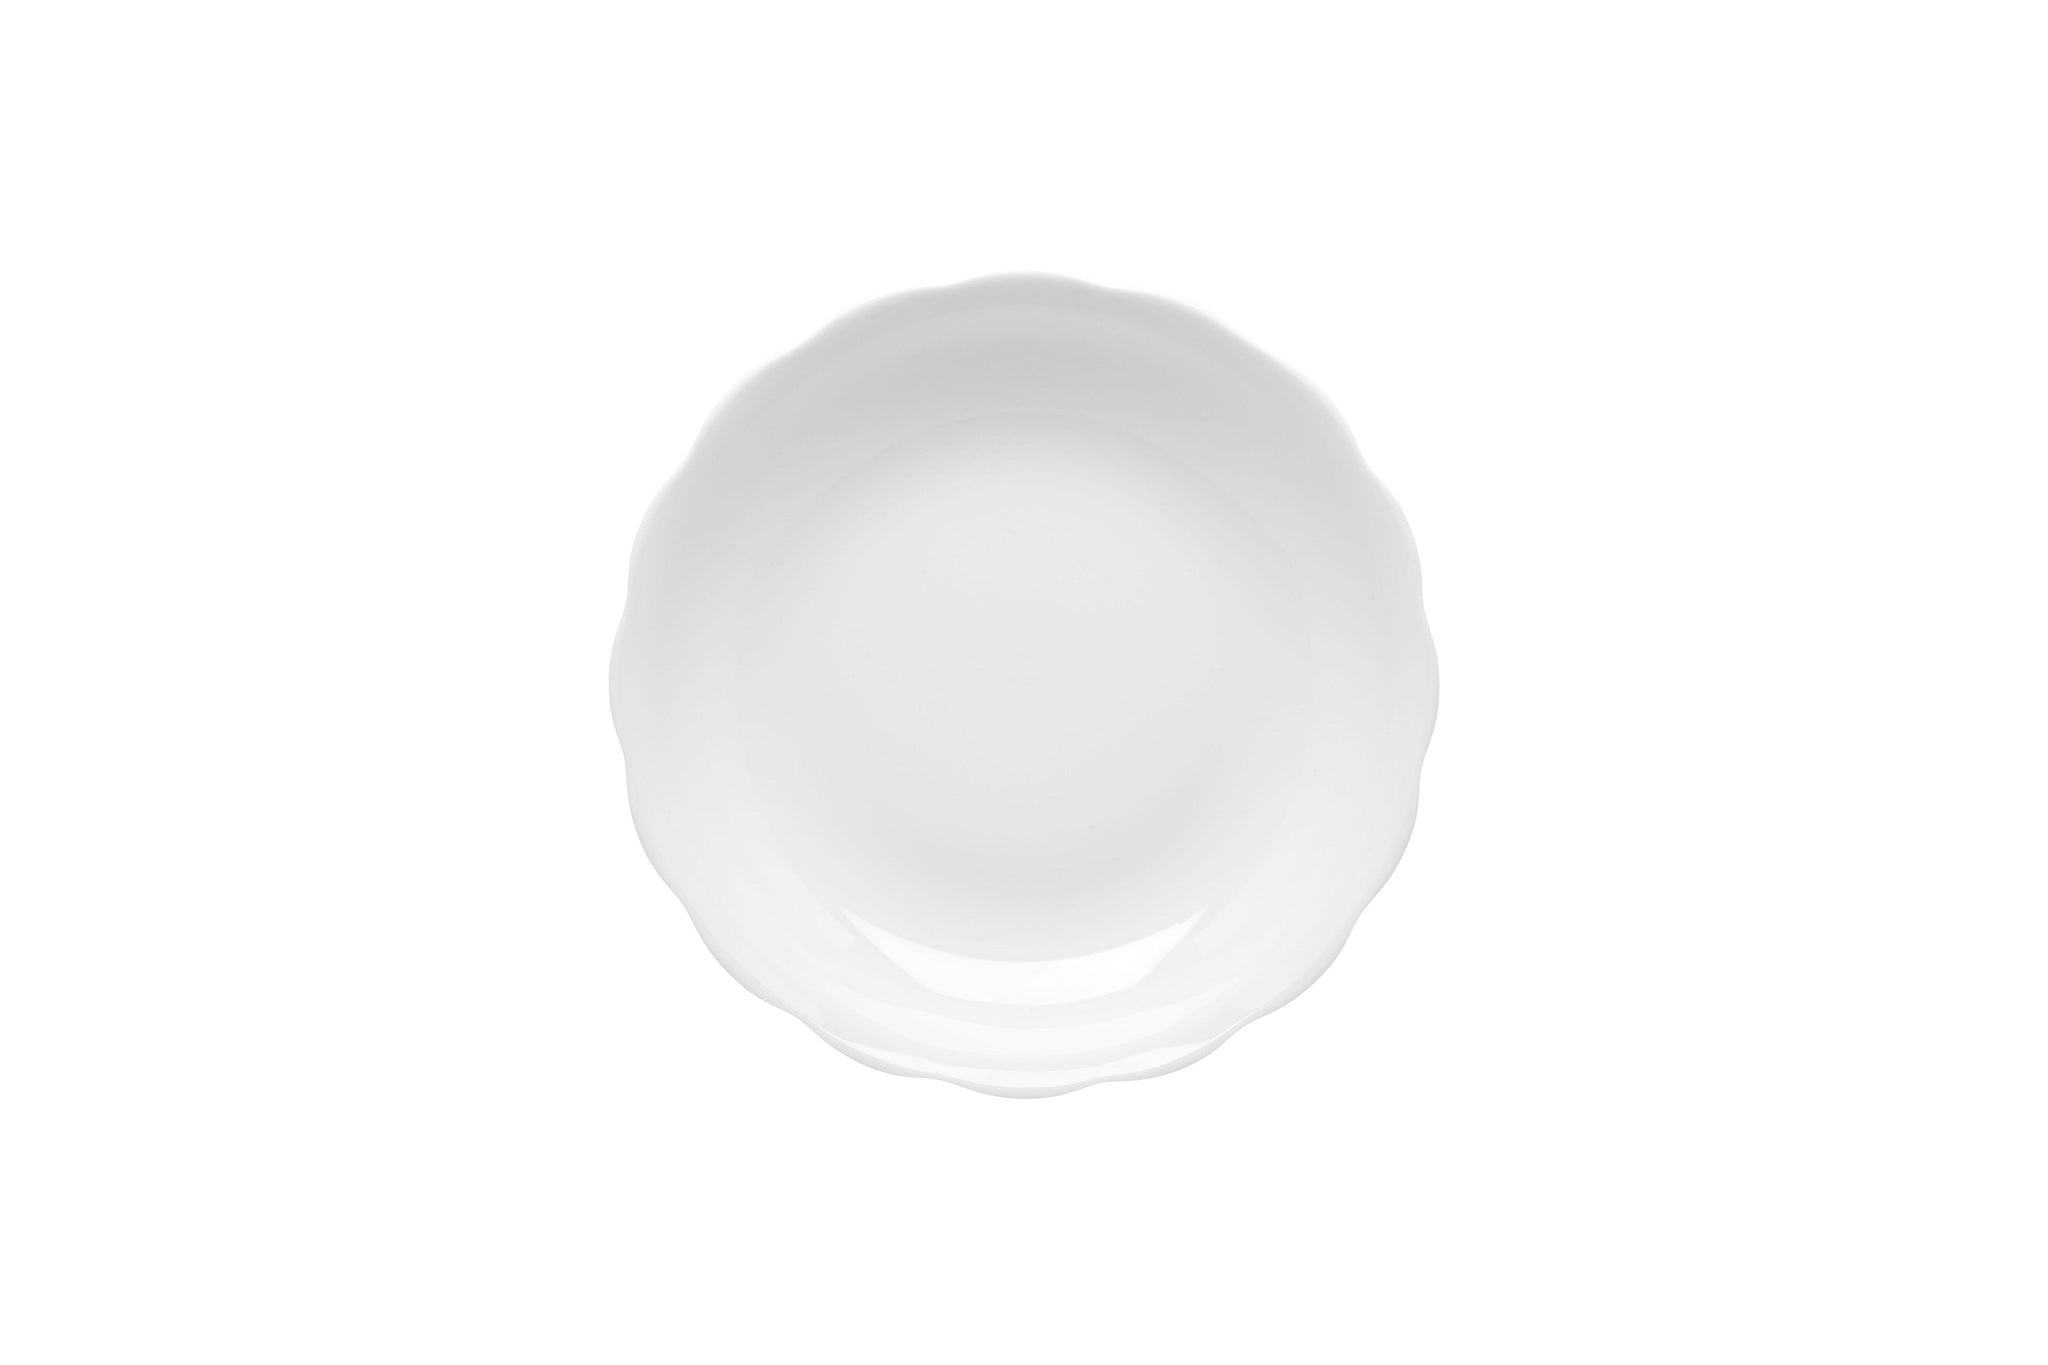 VISTA ALEGRE  Bragança White Cereal Bowl - Item 22001448